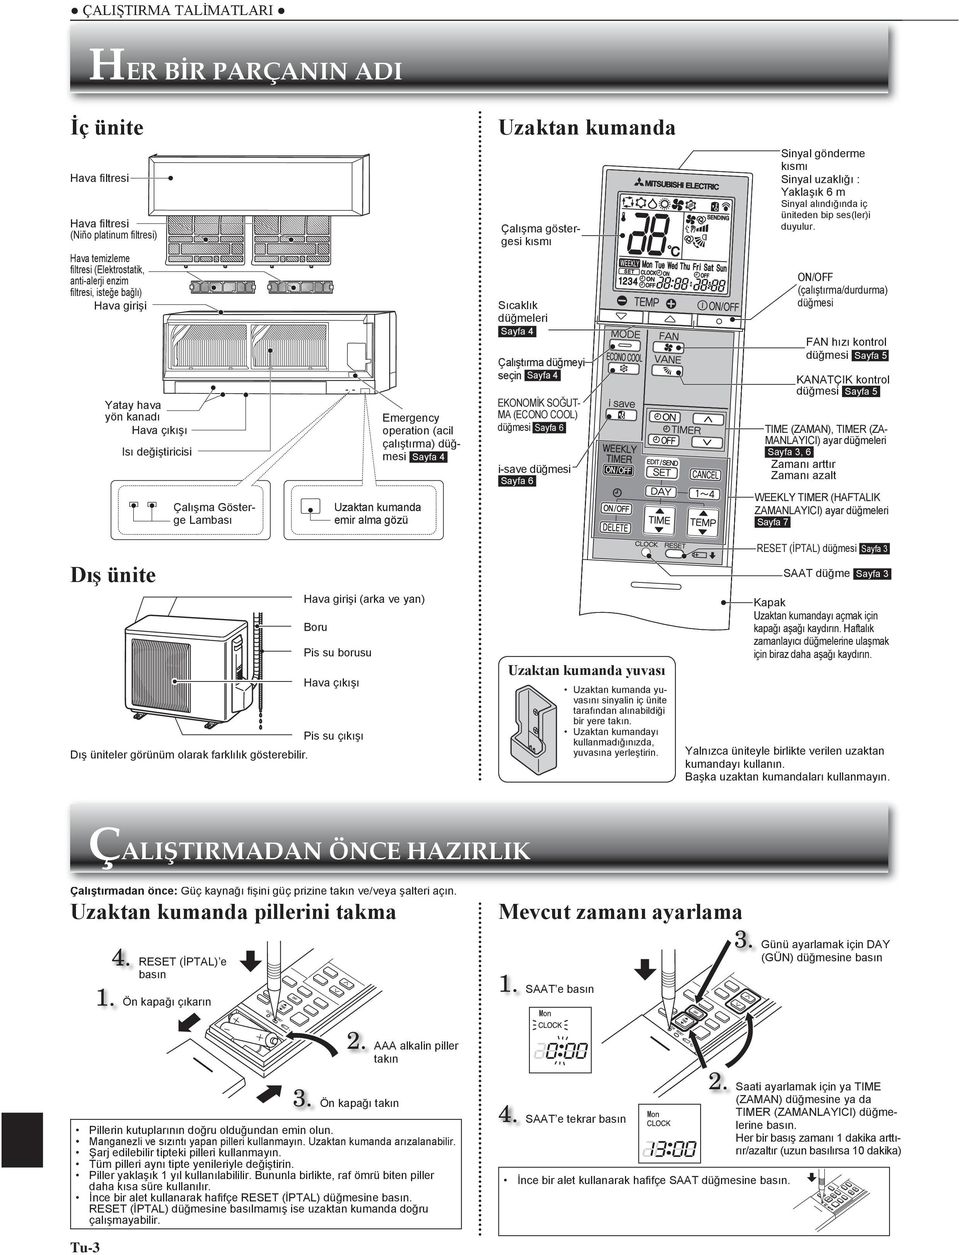 kısmı Sıcaklık düğmeleri Sayfa 4 Çalıştırma düğmeyi seçin Sayfa 4 EKONOMİK SOĞUT- MA (ECONO COOL) düğmesi Sayfa 6 i-save düğmesi Sayfa 6 Sinyal gönderme kısmı Sinyal uzaklığı : Yaklaşık 6 m Sinyal